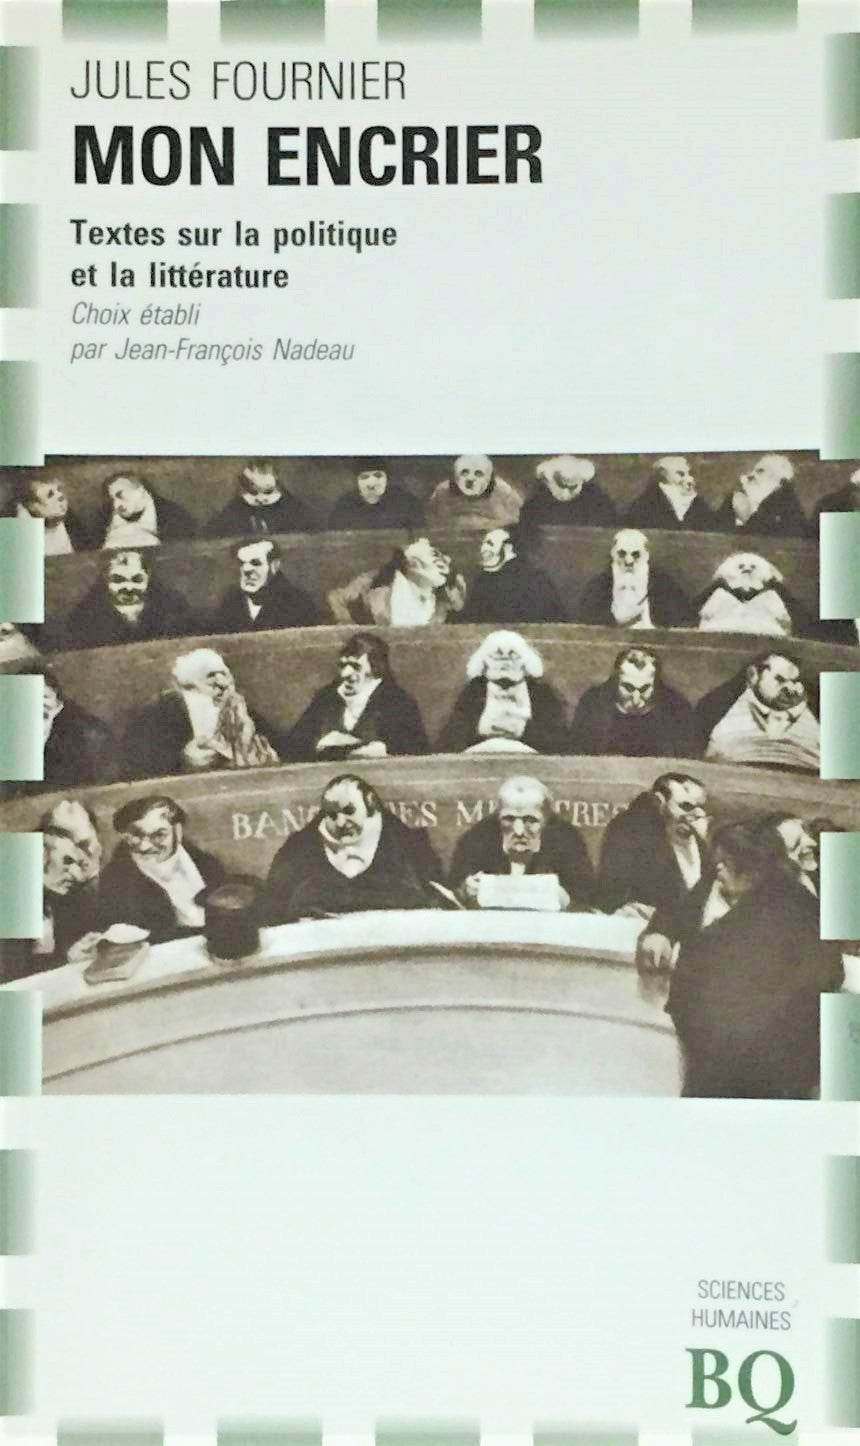 Livre ISBN 2894061293 Mon encrier : Texte sur la politique et la littérature (Jules Fournier)